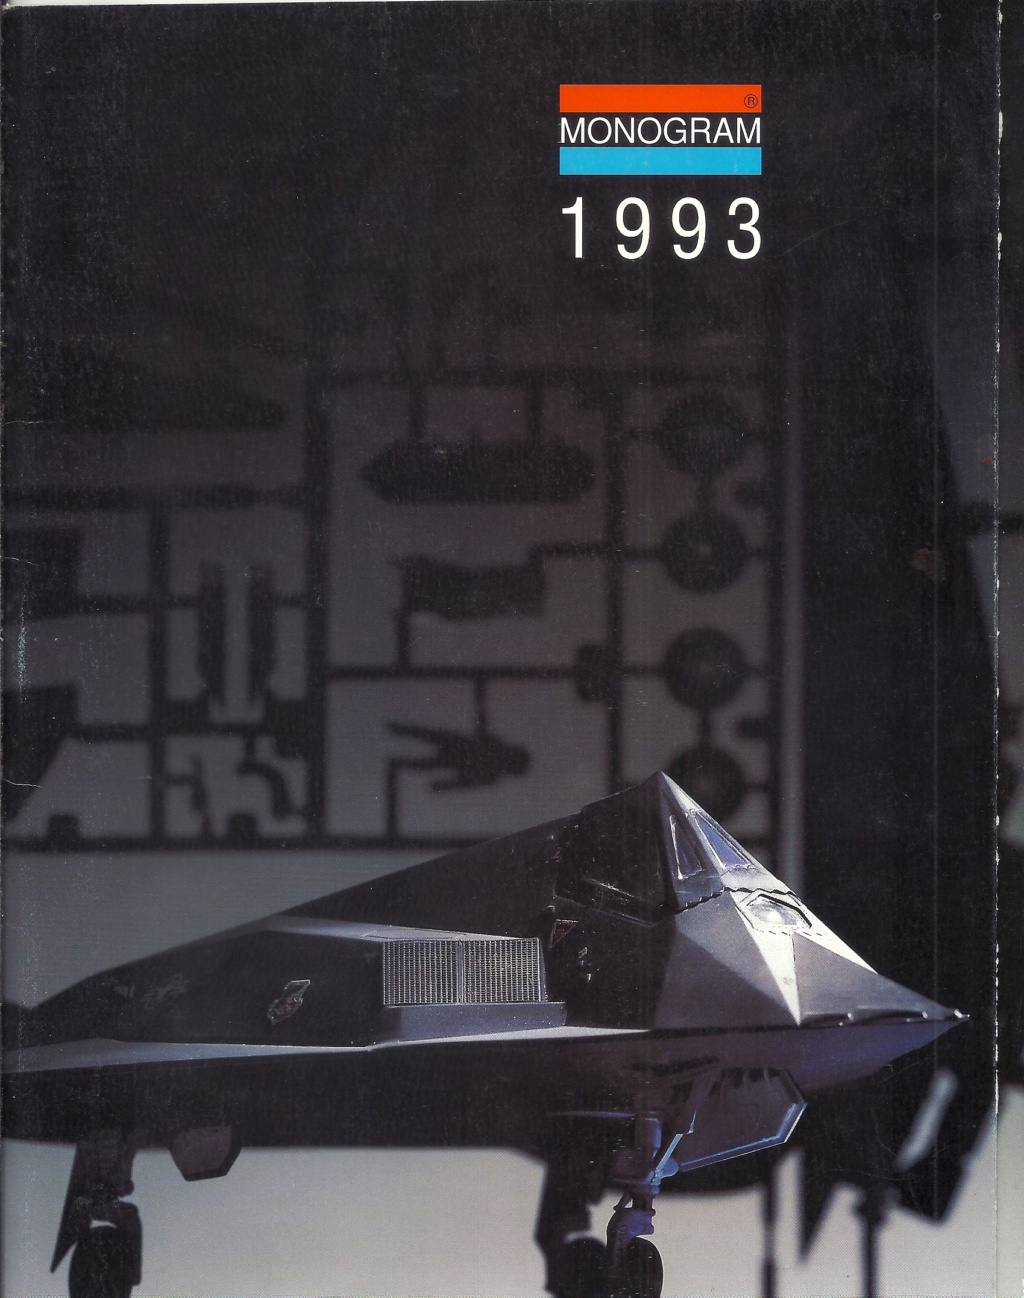 [MONOGRAM 1993] Catalogue 1993 Monog455